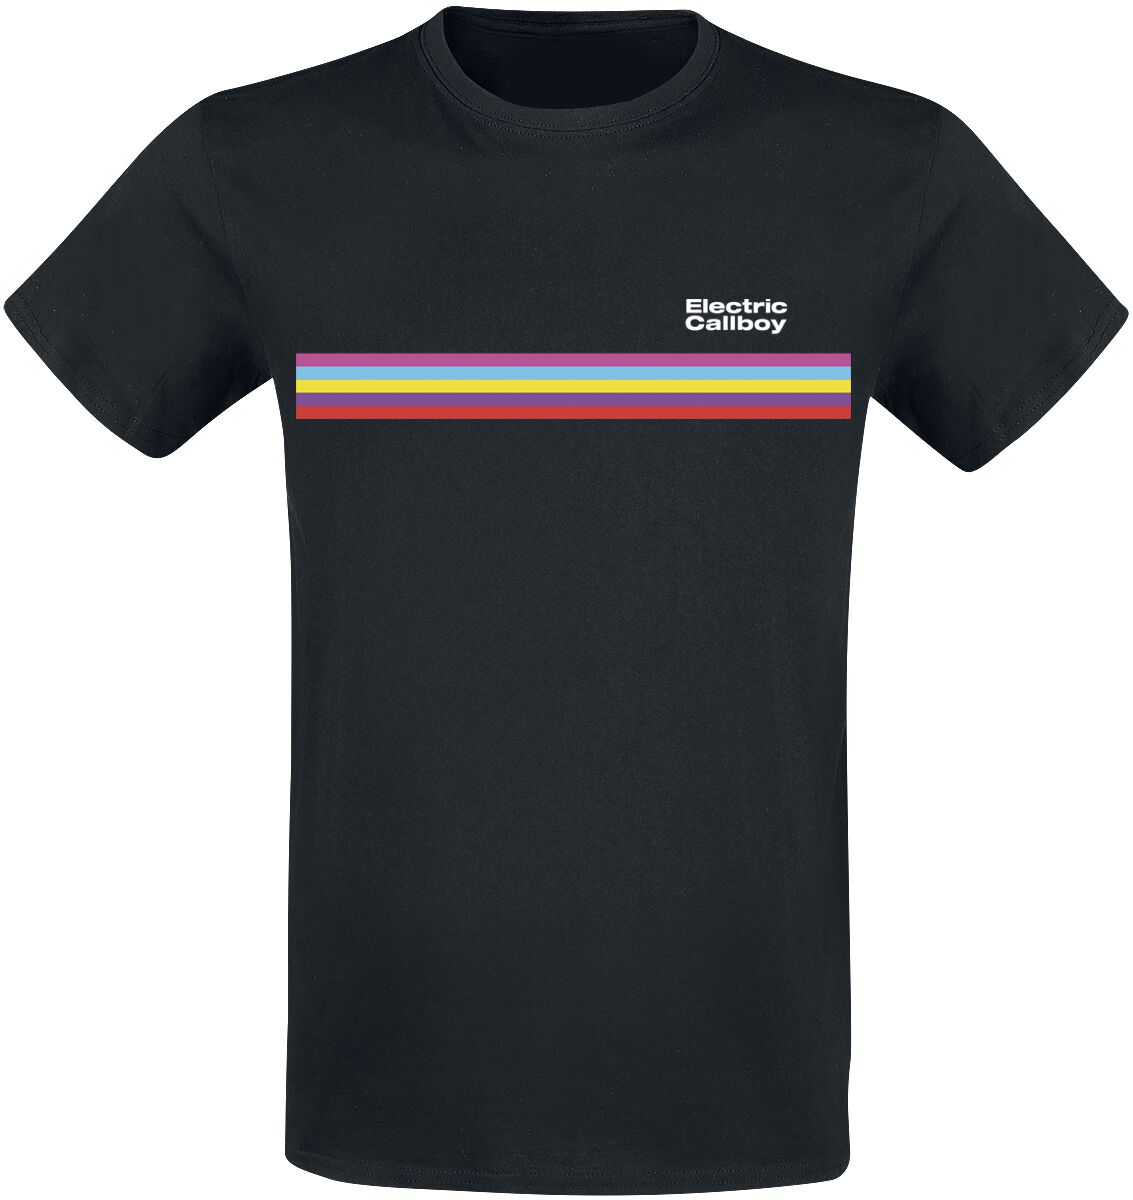 Electric Callboy T-Shirt - Stripe - S bis 3XL - für Männer - Größe XXL - schwarz  - Lizenziertes Merchandise!